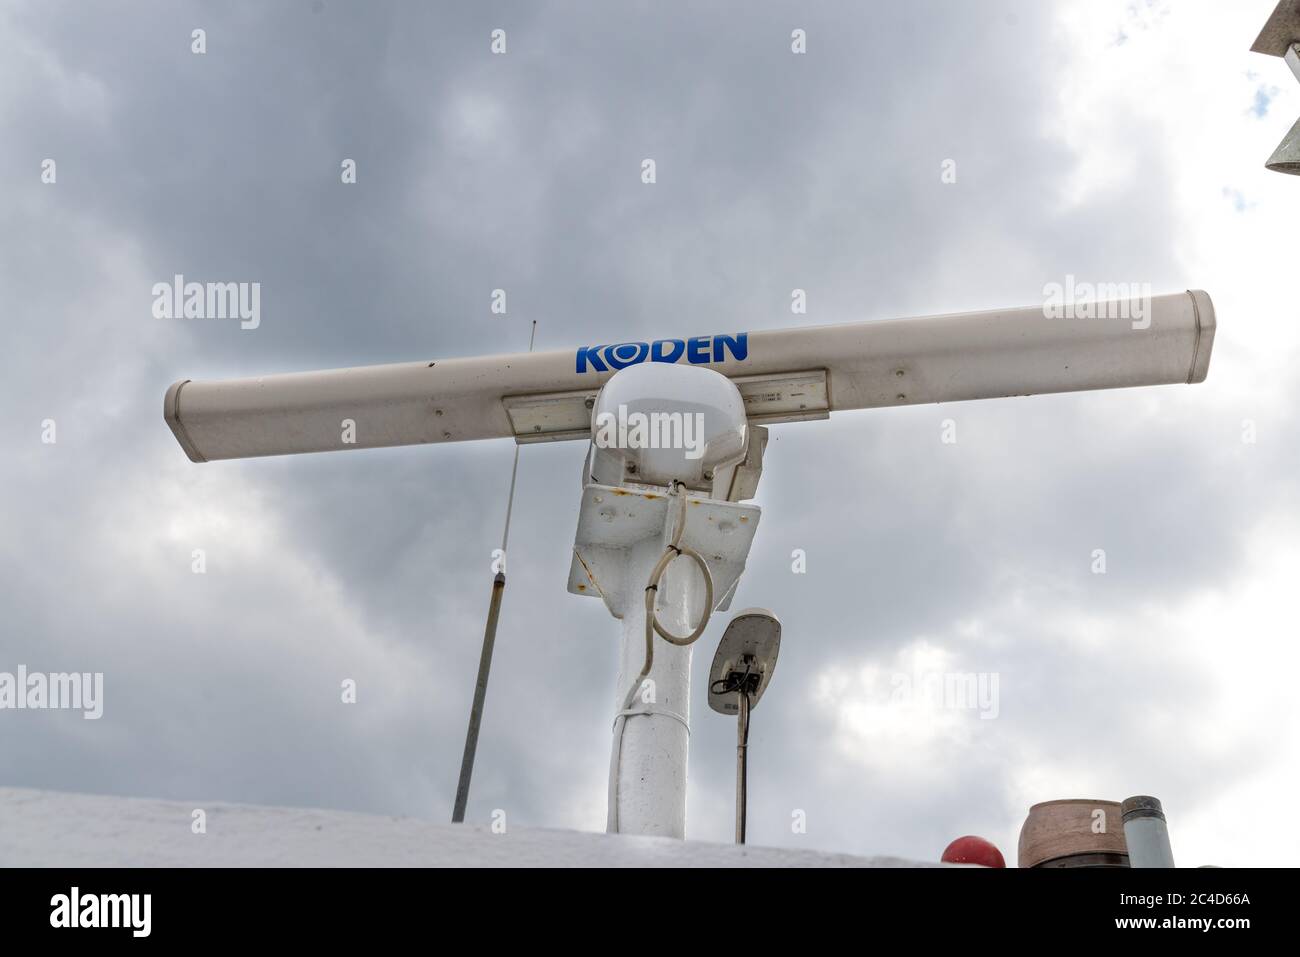 FEHMARN, DEUTSCHLAND - 03. Sep 2019: Eine alte Radarantenne auf einem Boot gegen einen grauen Himmel, mit Rost und dicker weißer Farbe bedeckt. Stockfoto